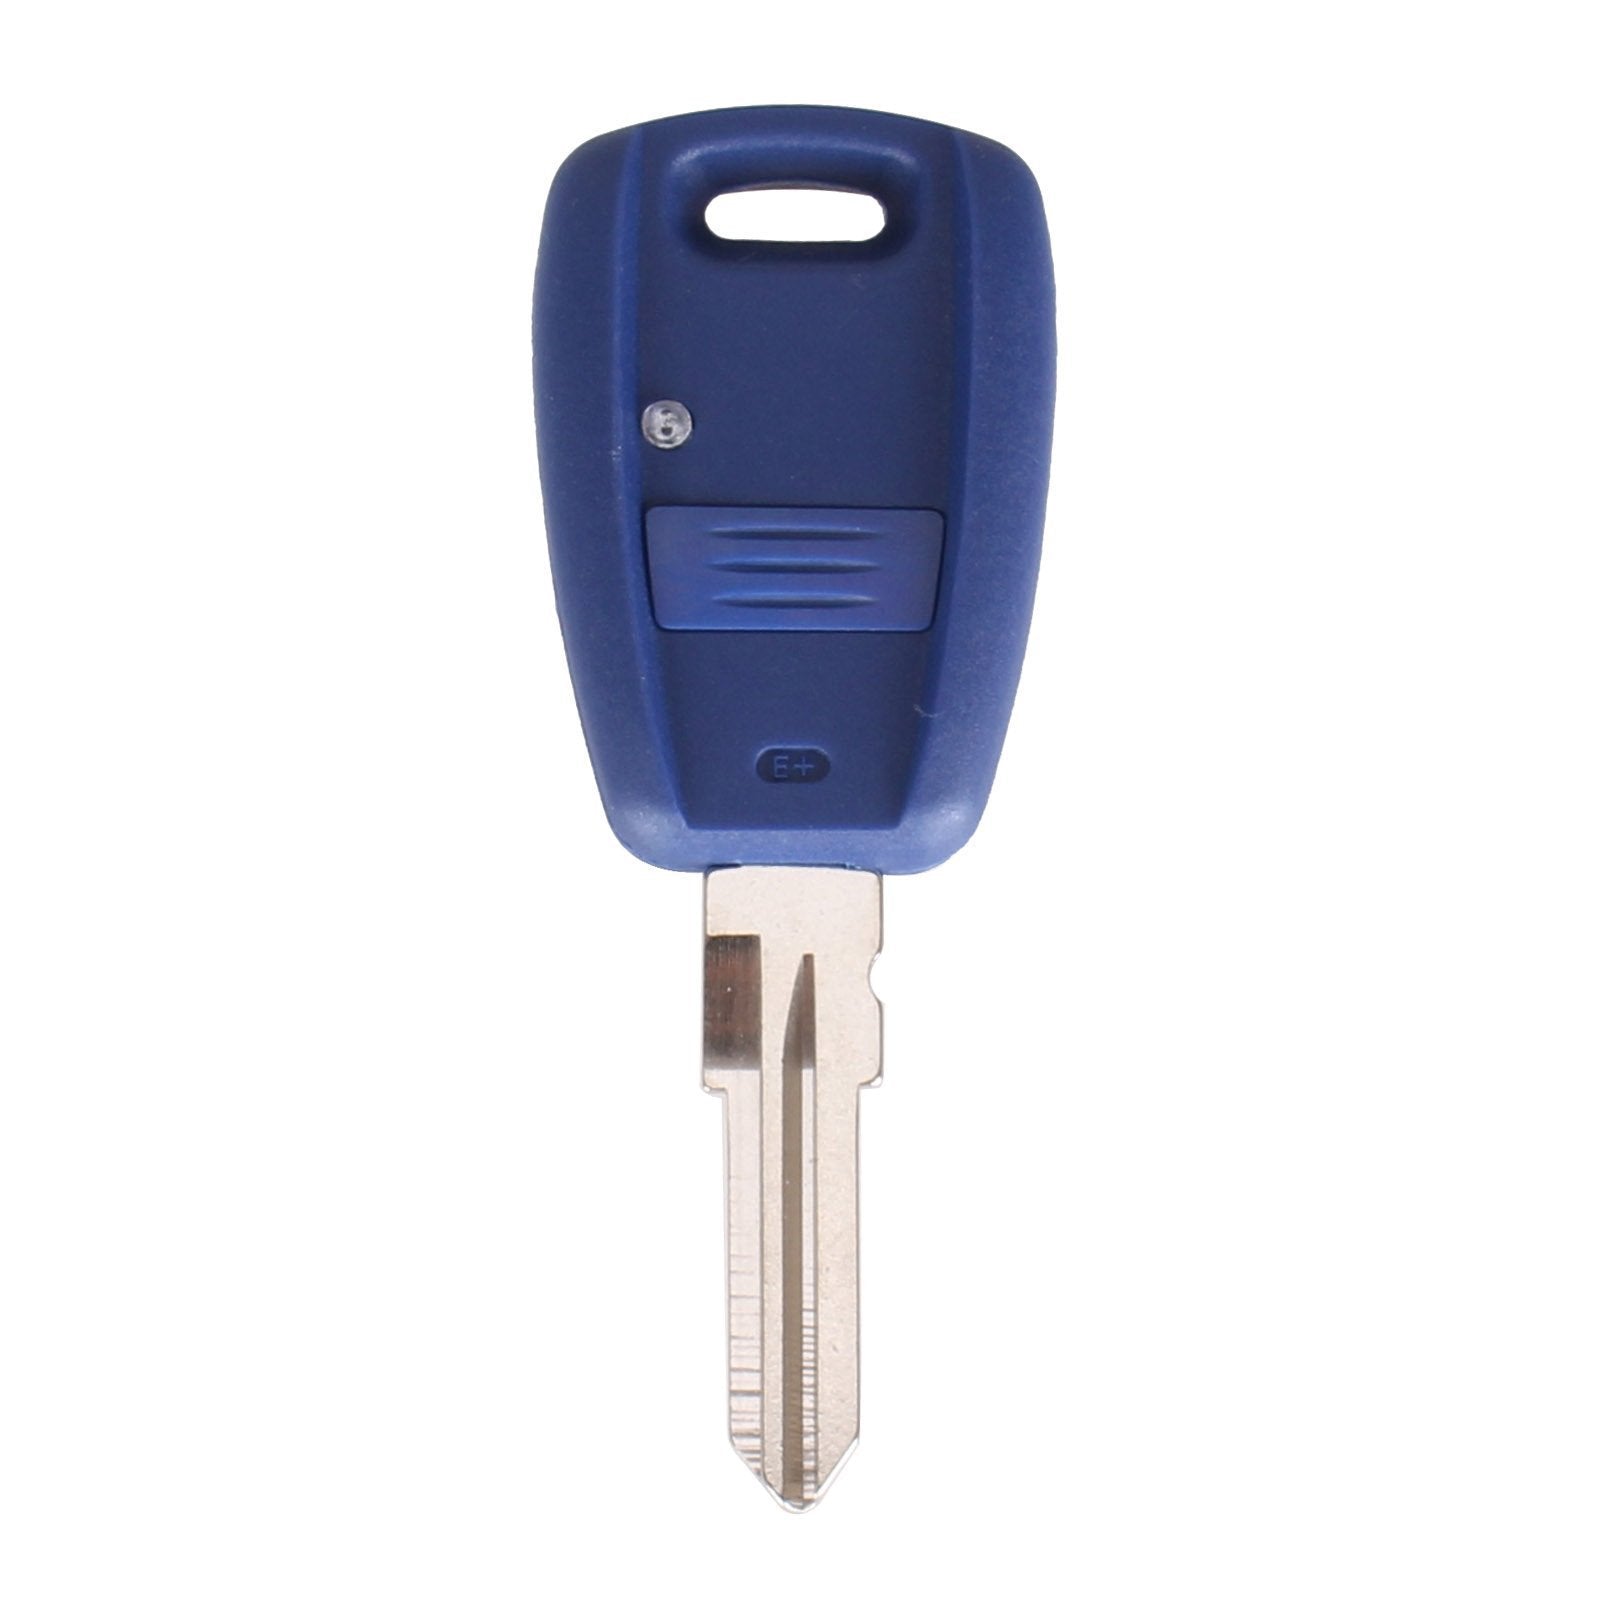 Kék színű, 1 gombos Fiat kulcs, kulcsház GT15R kulcsszárral.